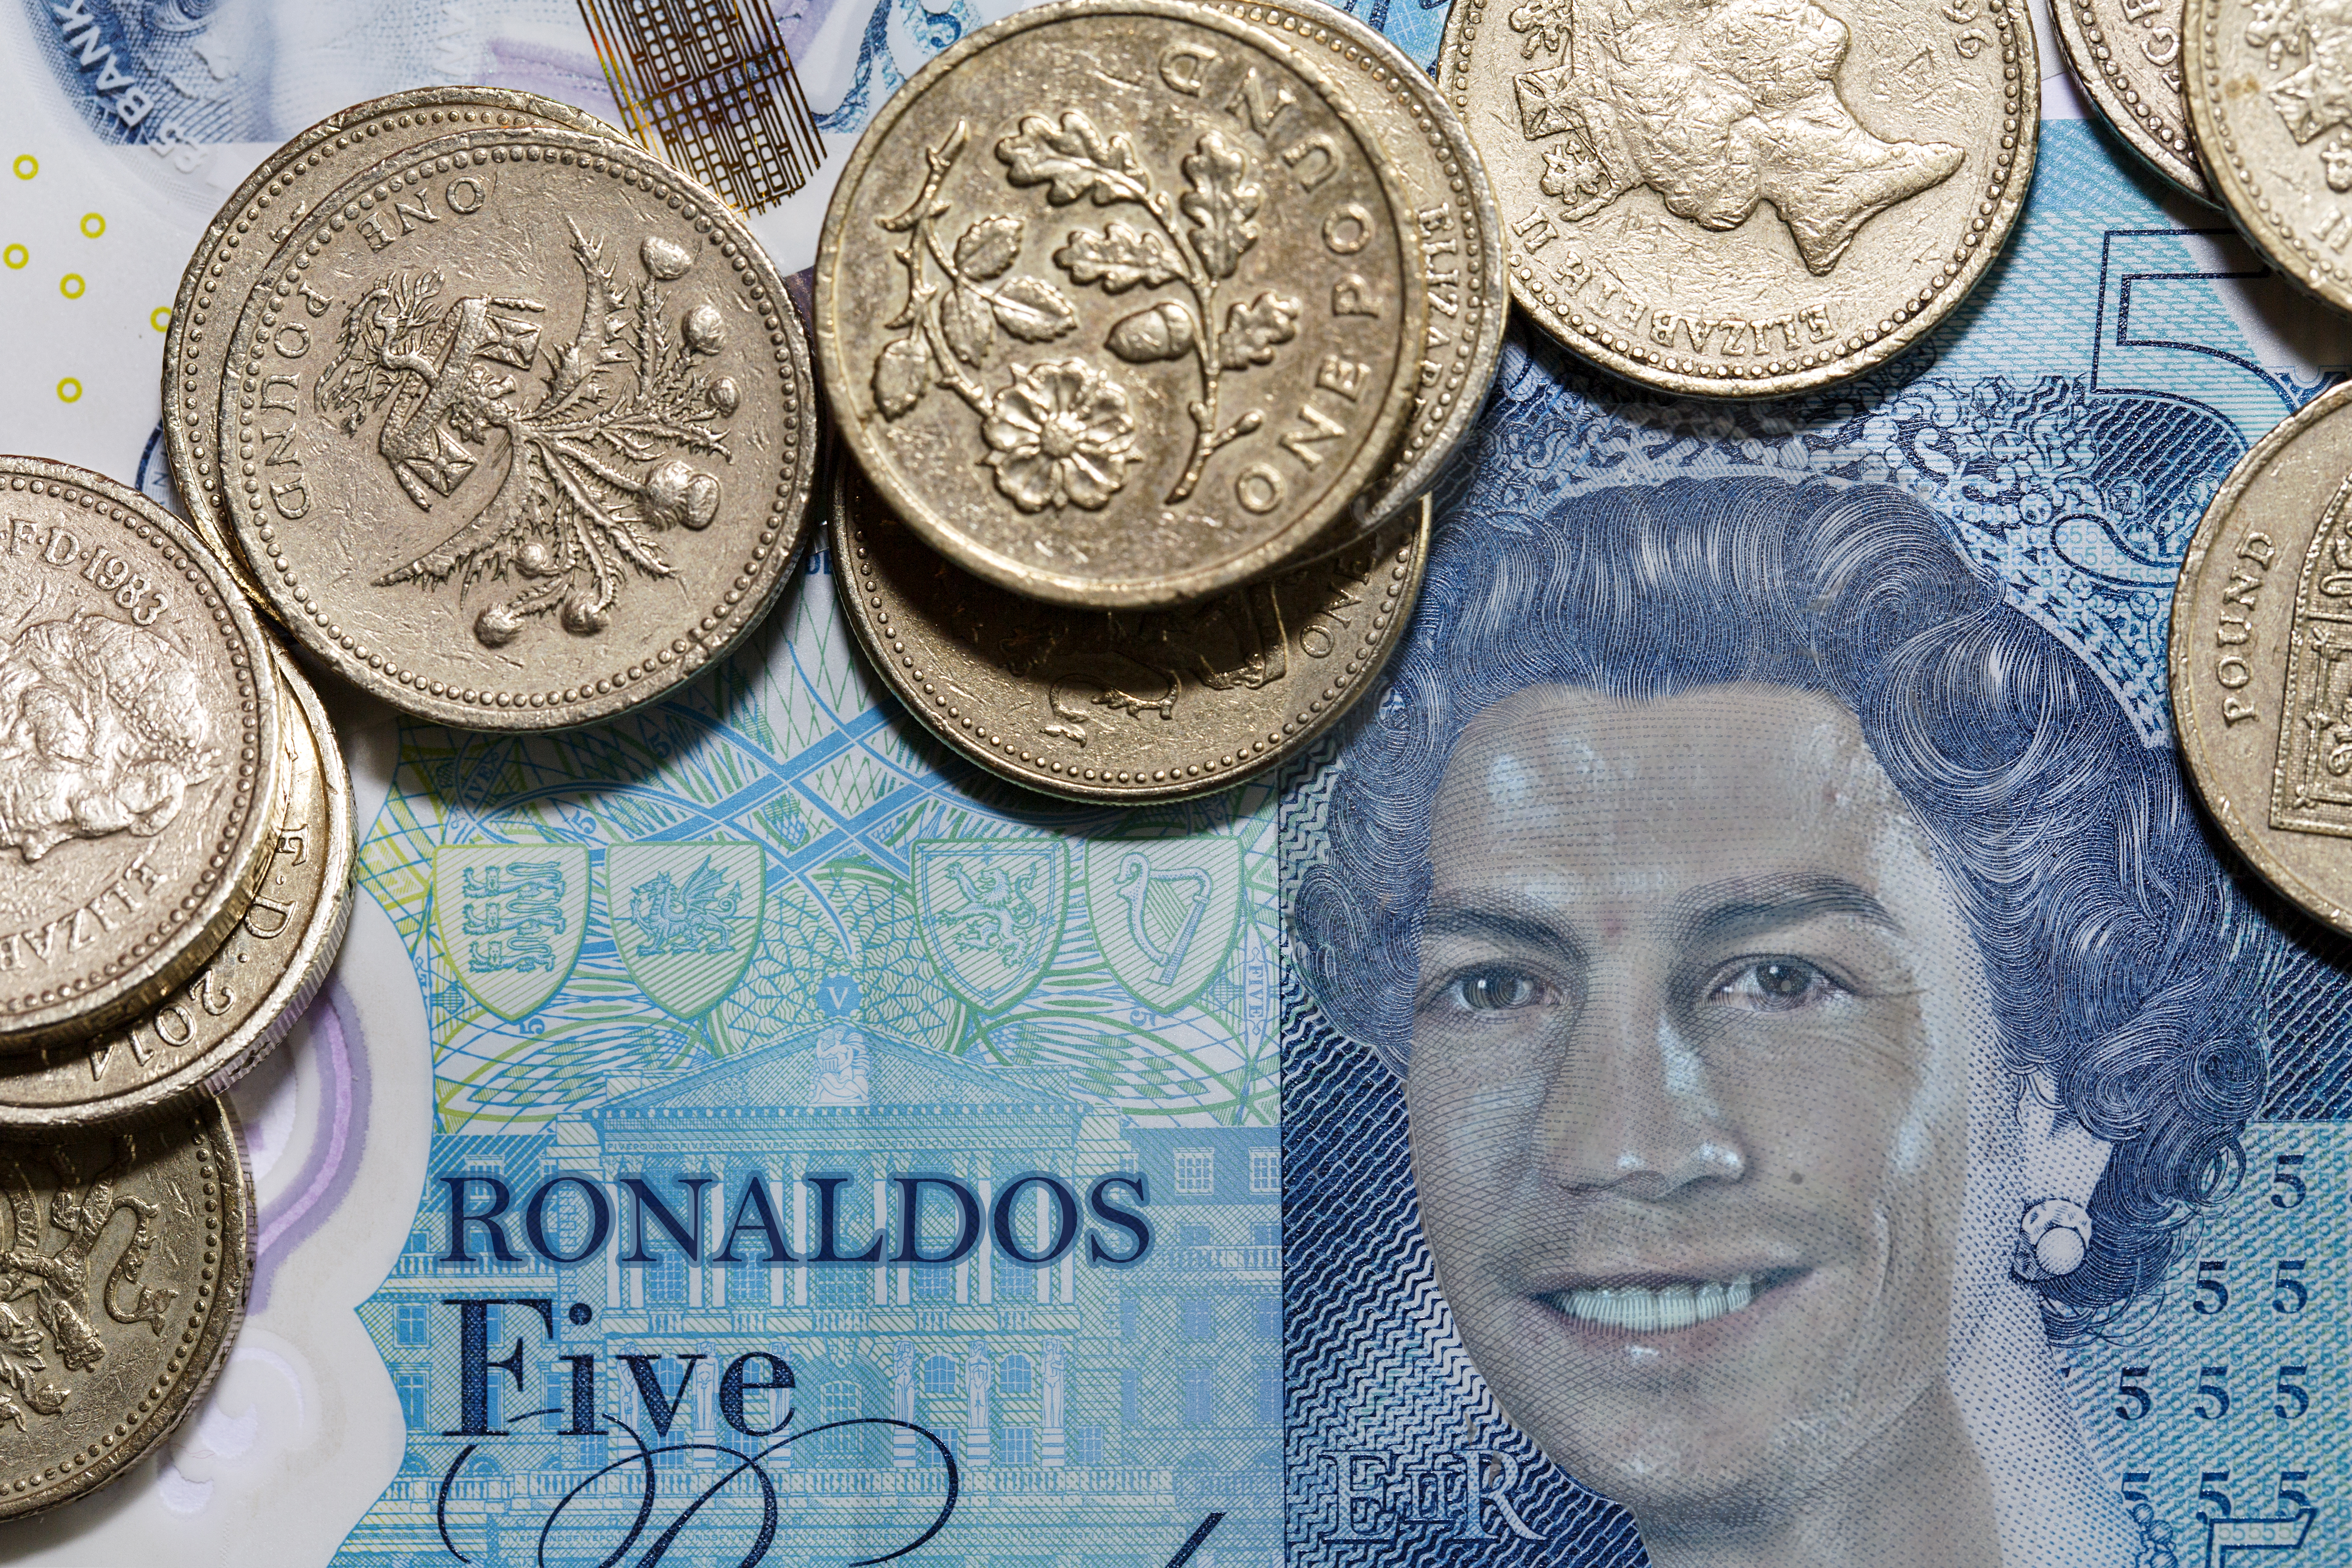 Five Royal Ronaldo Pounds